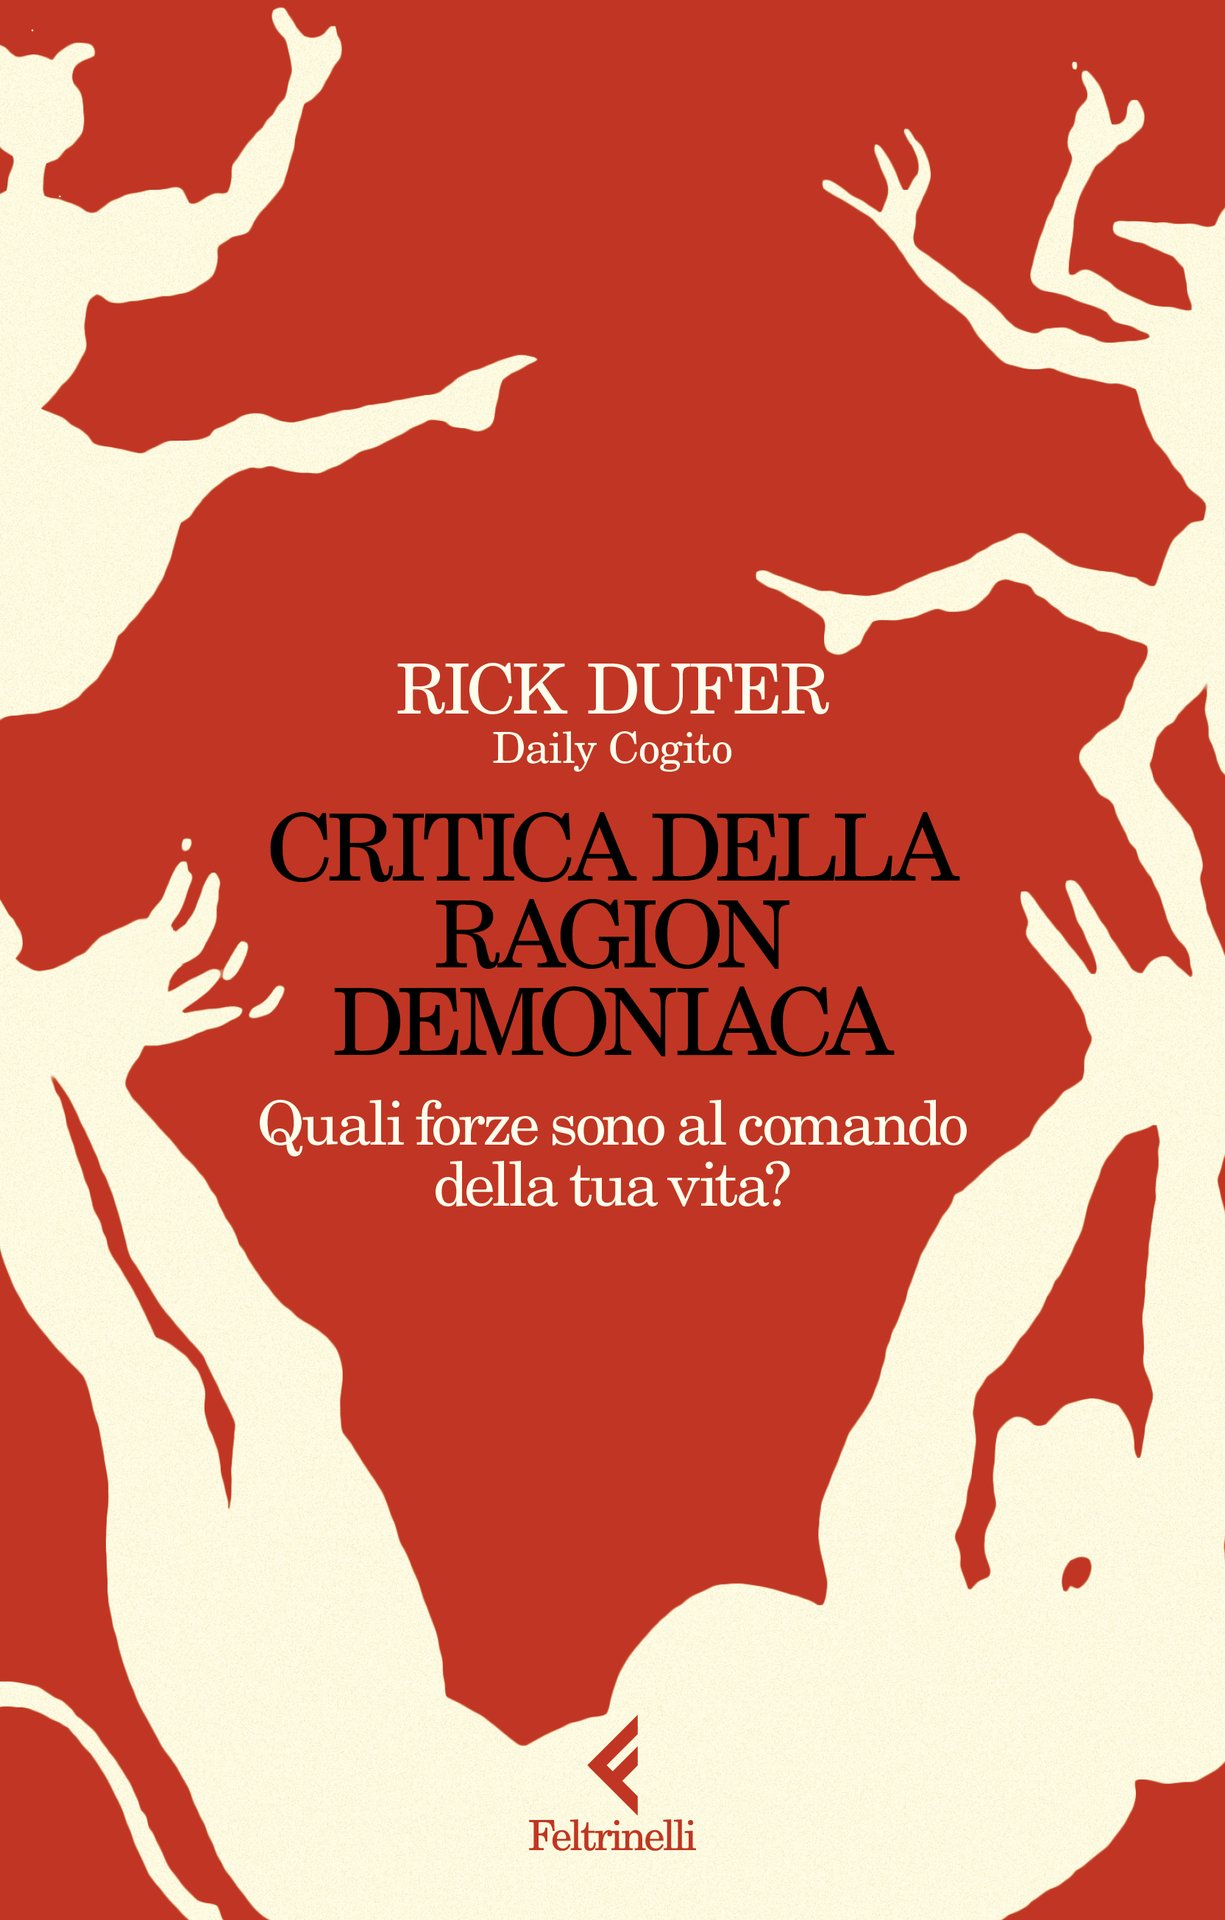 Rick DuFer presenta "Critica della ragion demoniaca" alla Feltrinelli Libia, Roma